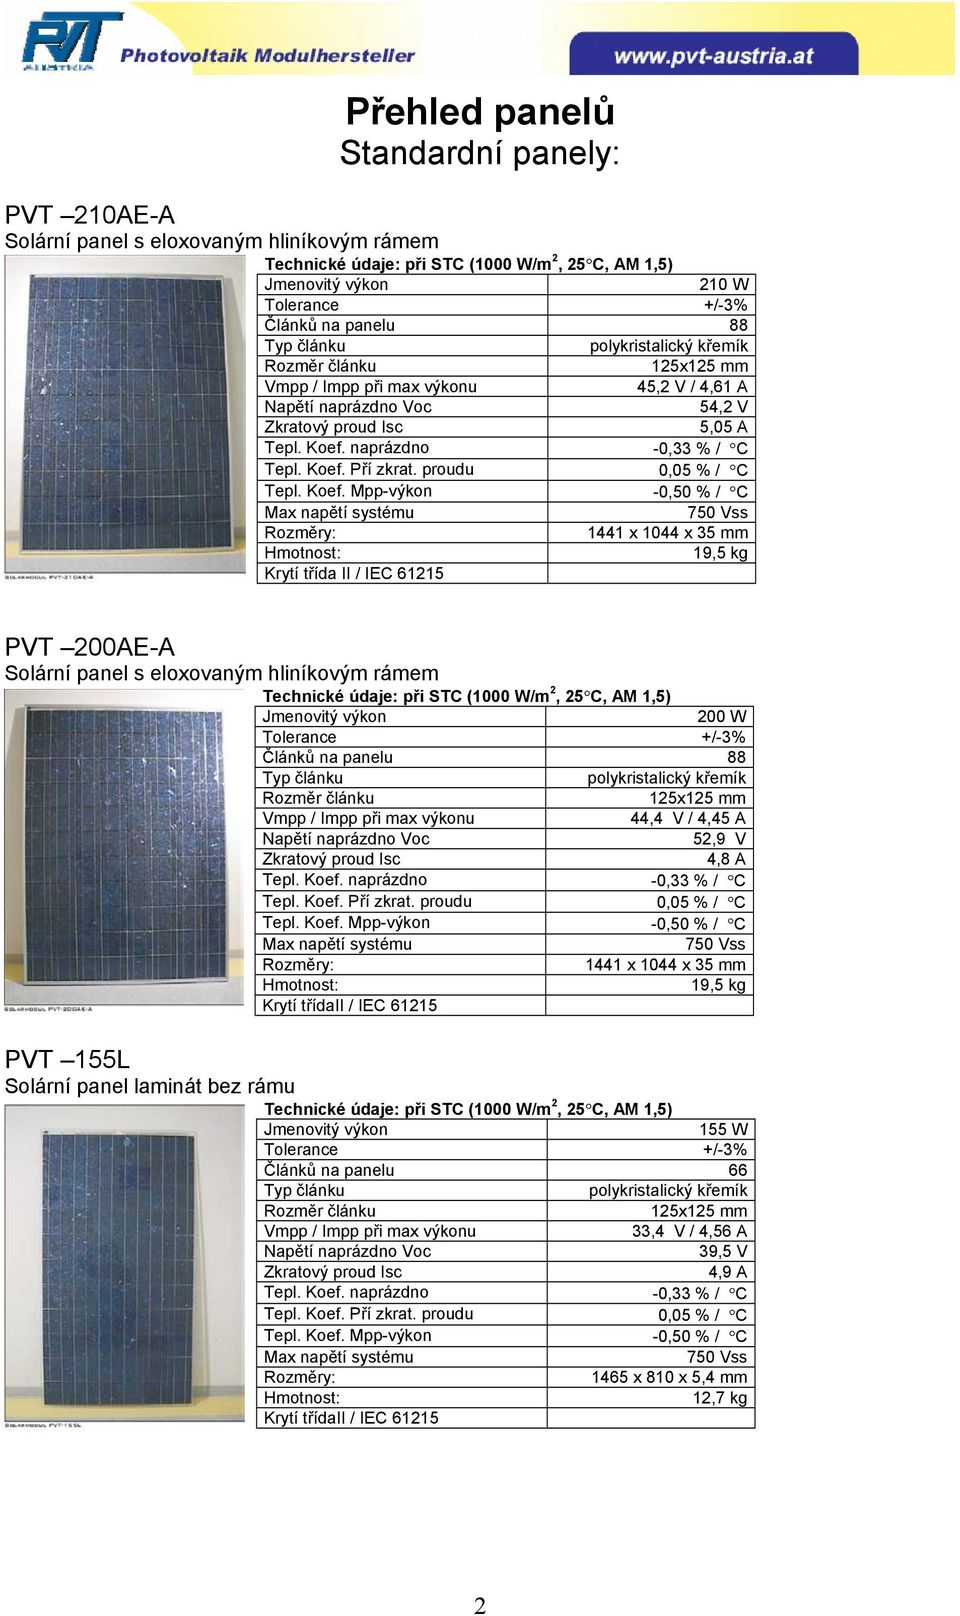 eloxovaným hliníkovým rámem 200 W Článků na panelu 88 44,4 V / 4,45 A 52,9 V 4,8 A 1441 x 1044 x 35 mm 19,5 kg PVT